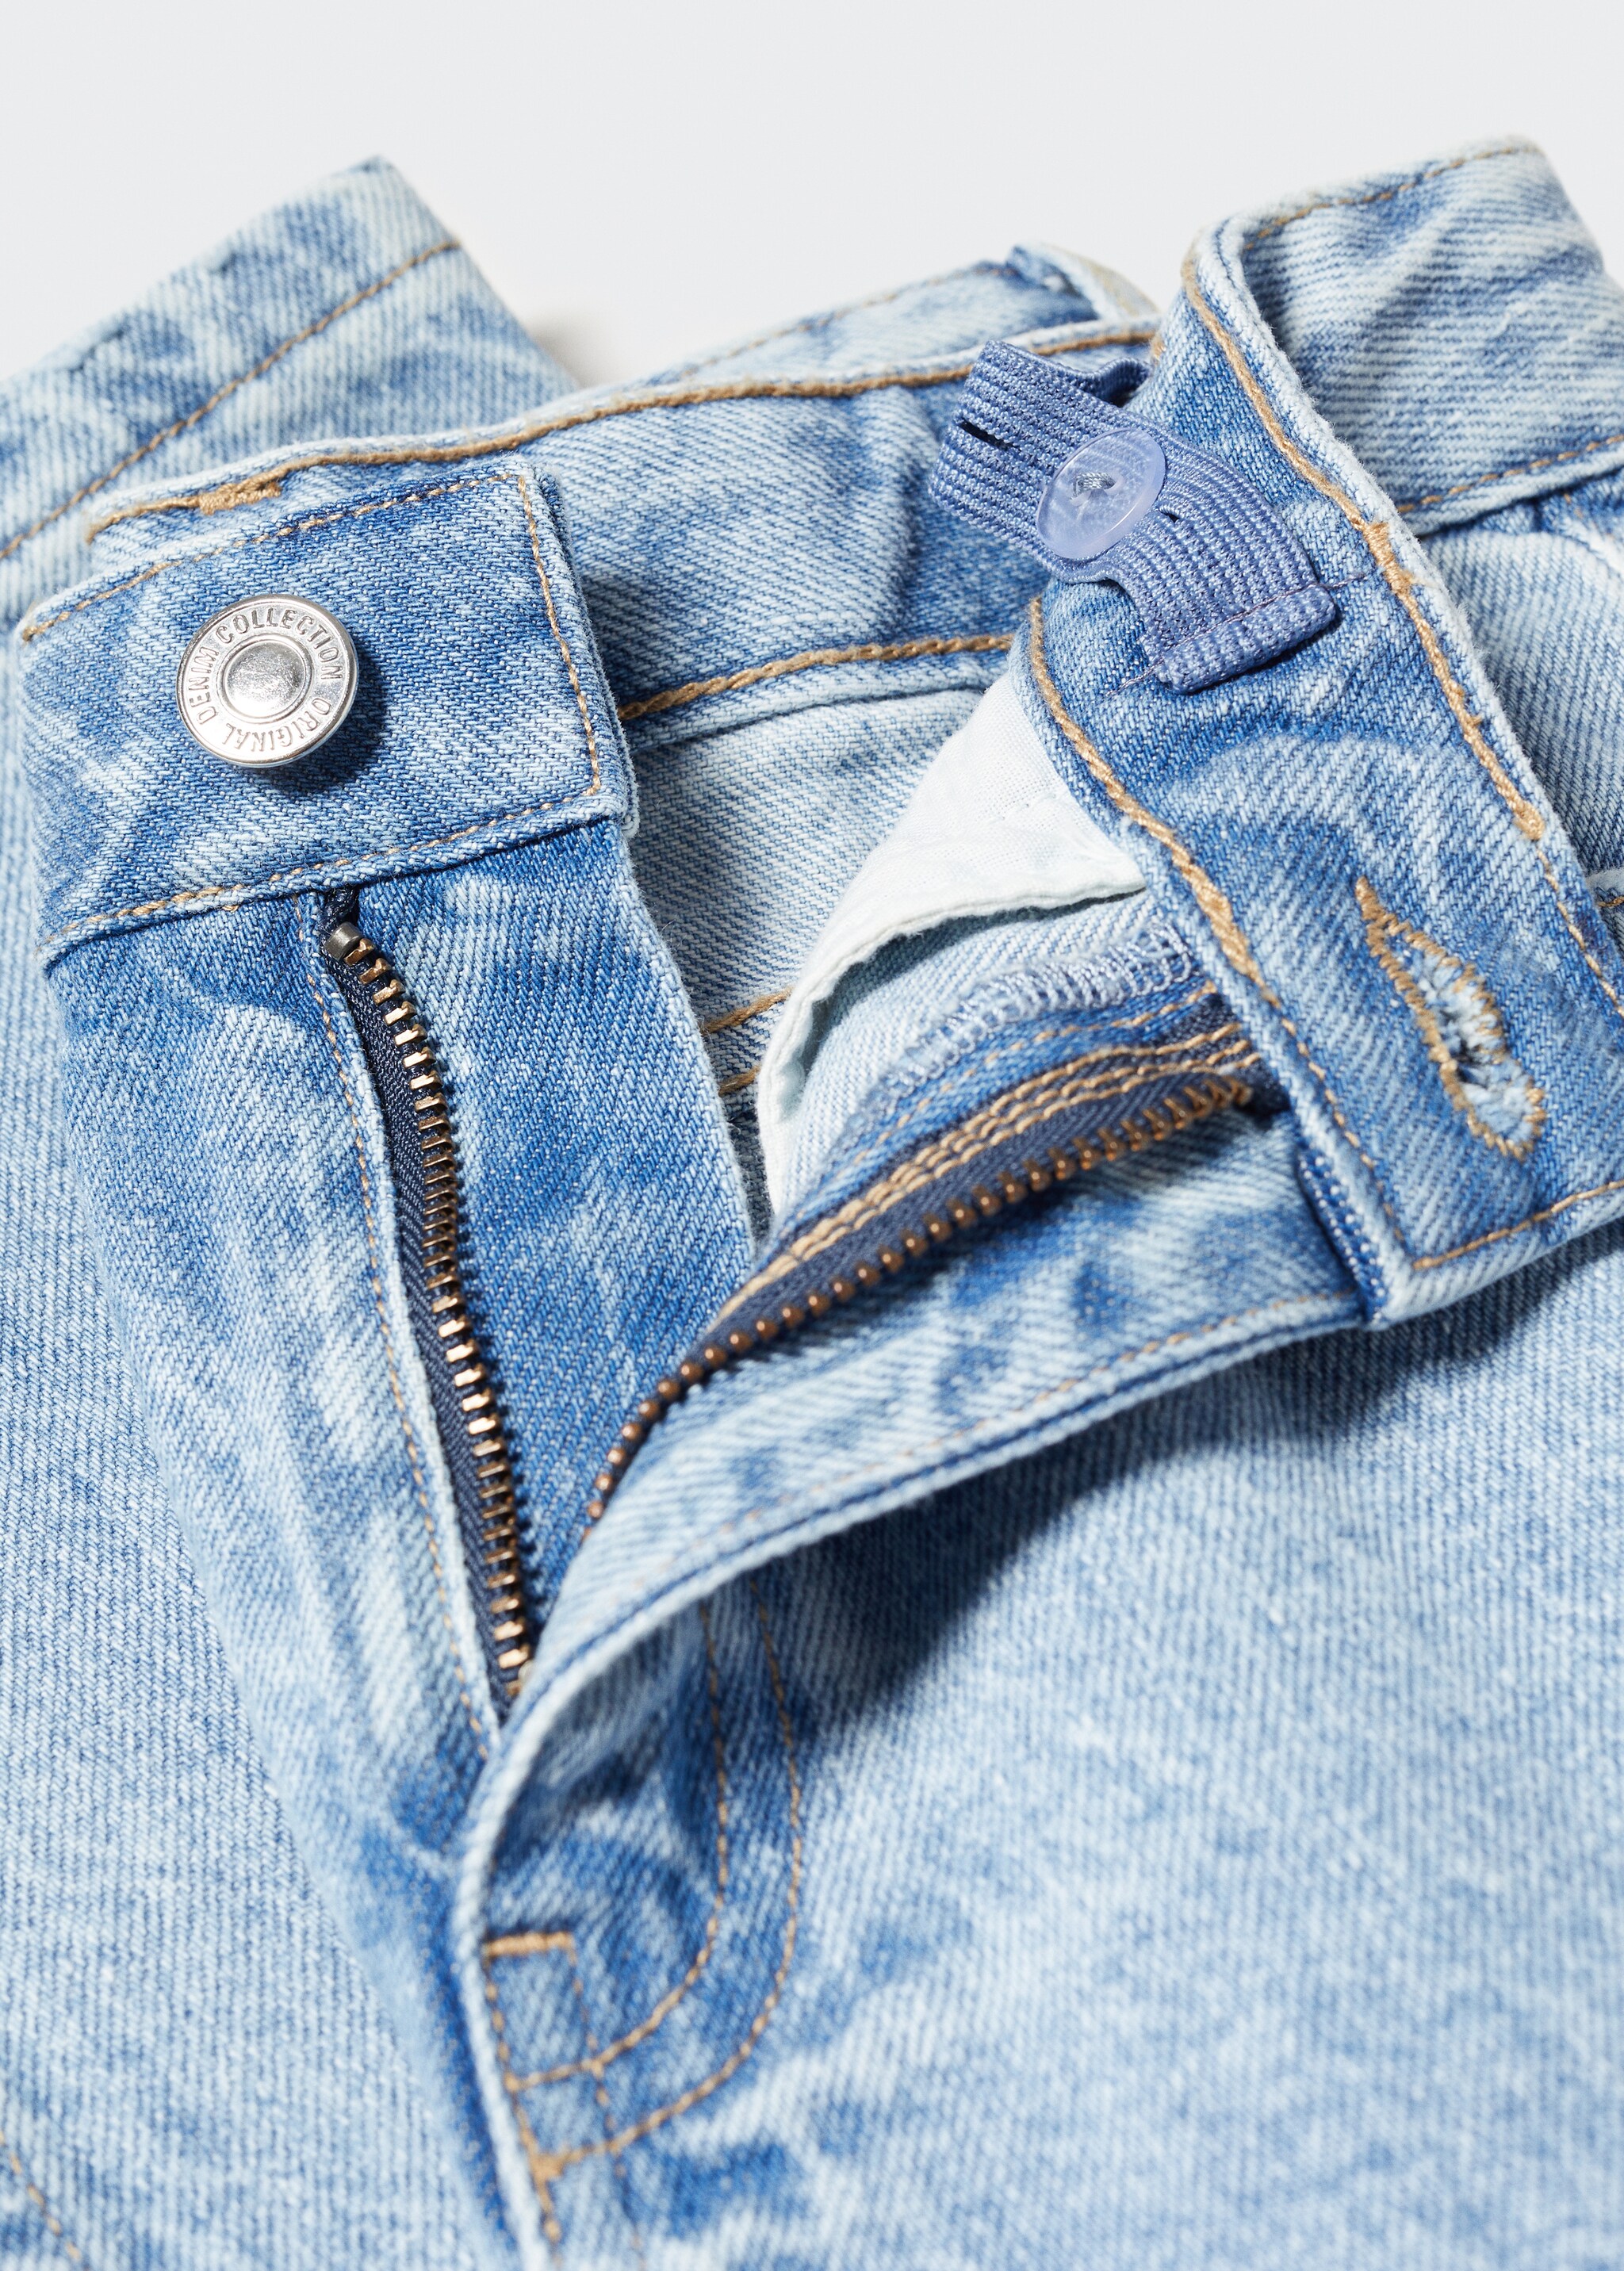 Jeans rectos rotos decorativos - Detalle del artículo 8